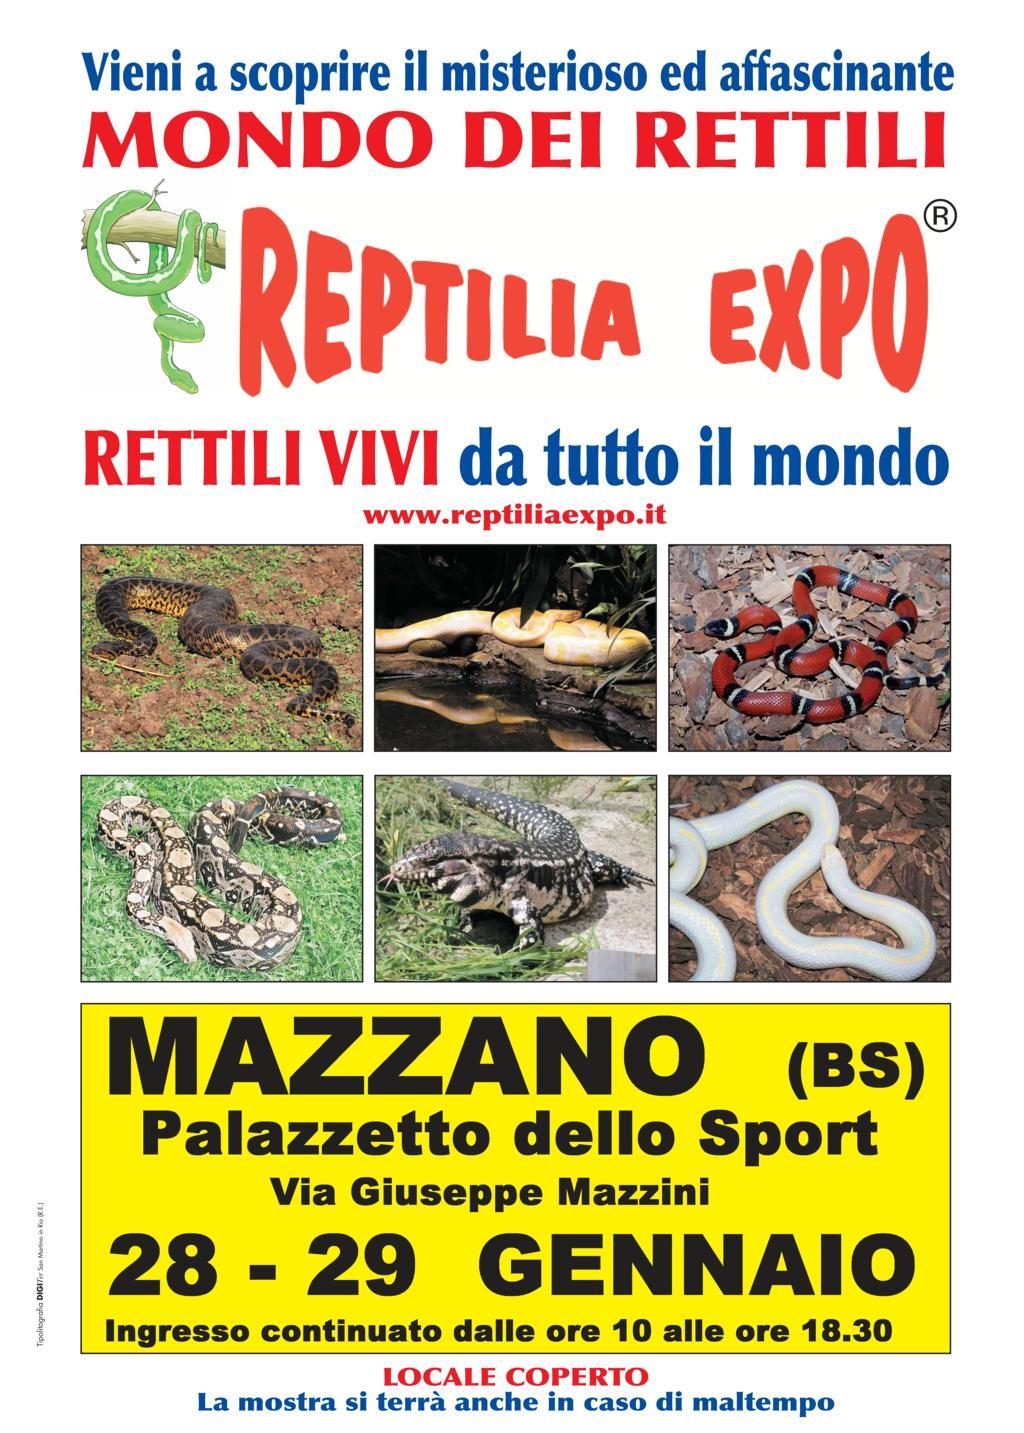 REPTILIA EXPO - L'affascinante mondo dei rettili A brescia  presso il Palazzetto dello Sport di MAZZANO !